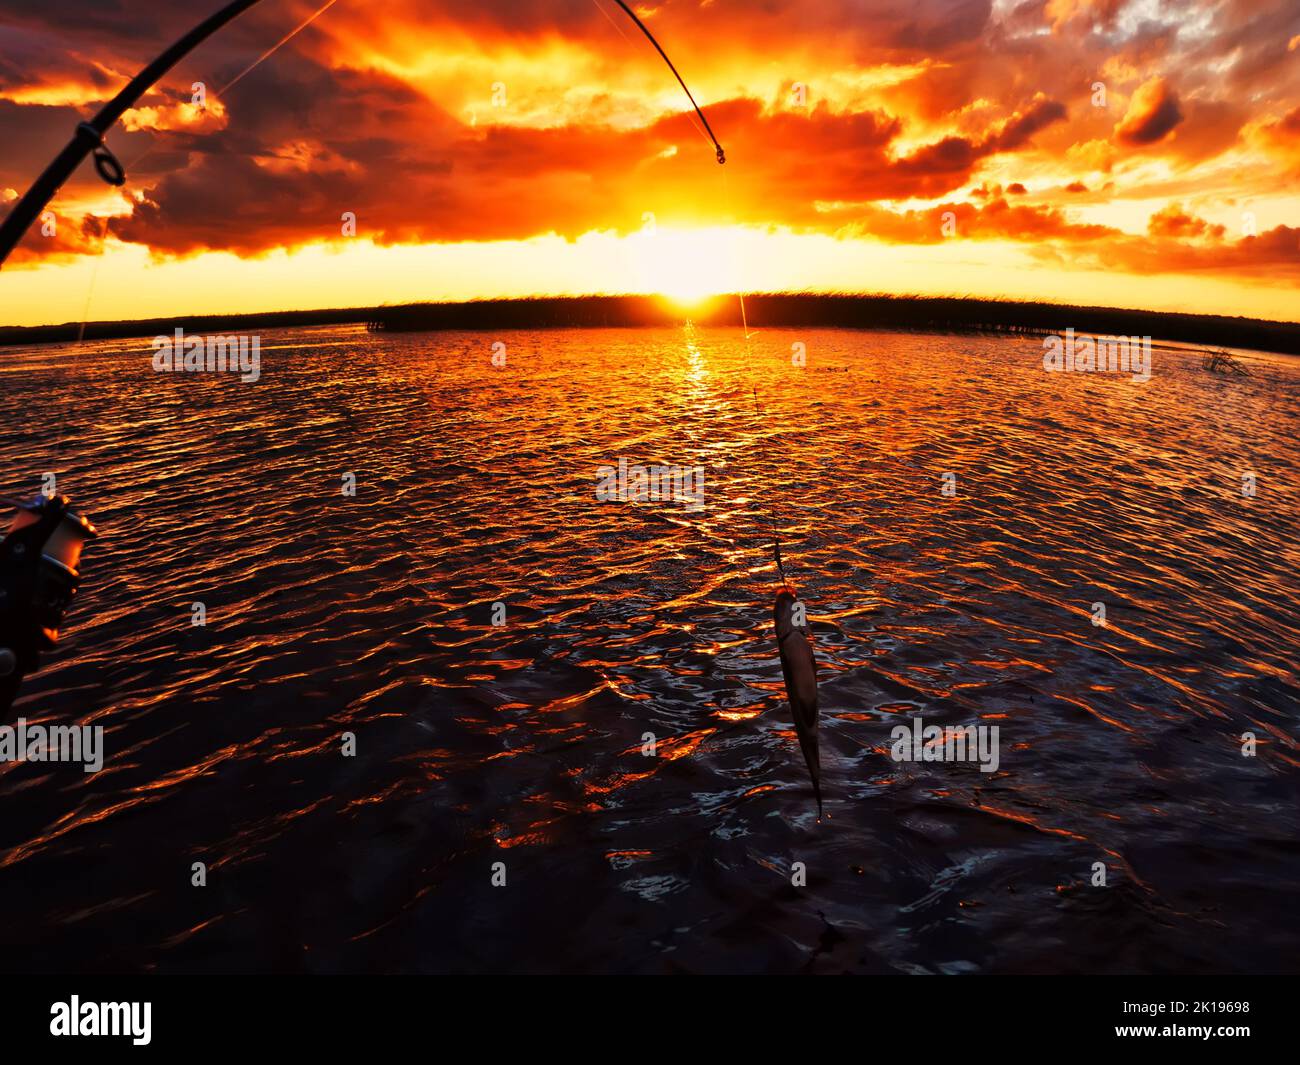 Pesca al tramonto. Cattura del pesce predatore sulla filatura. Colori del tramonto sulla superficie dell'acqua, sentiero soleggiato dal sole basso. Nerfling catturato su un filatore. Foto Stock